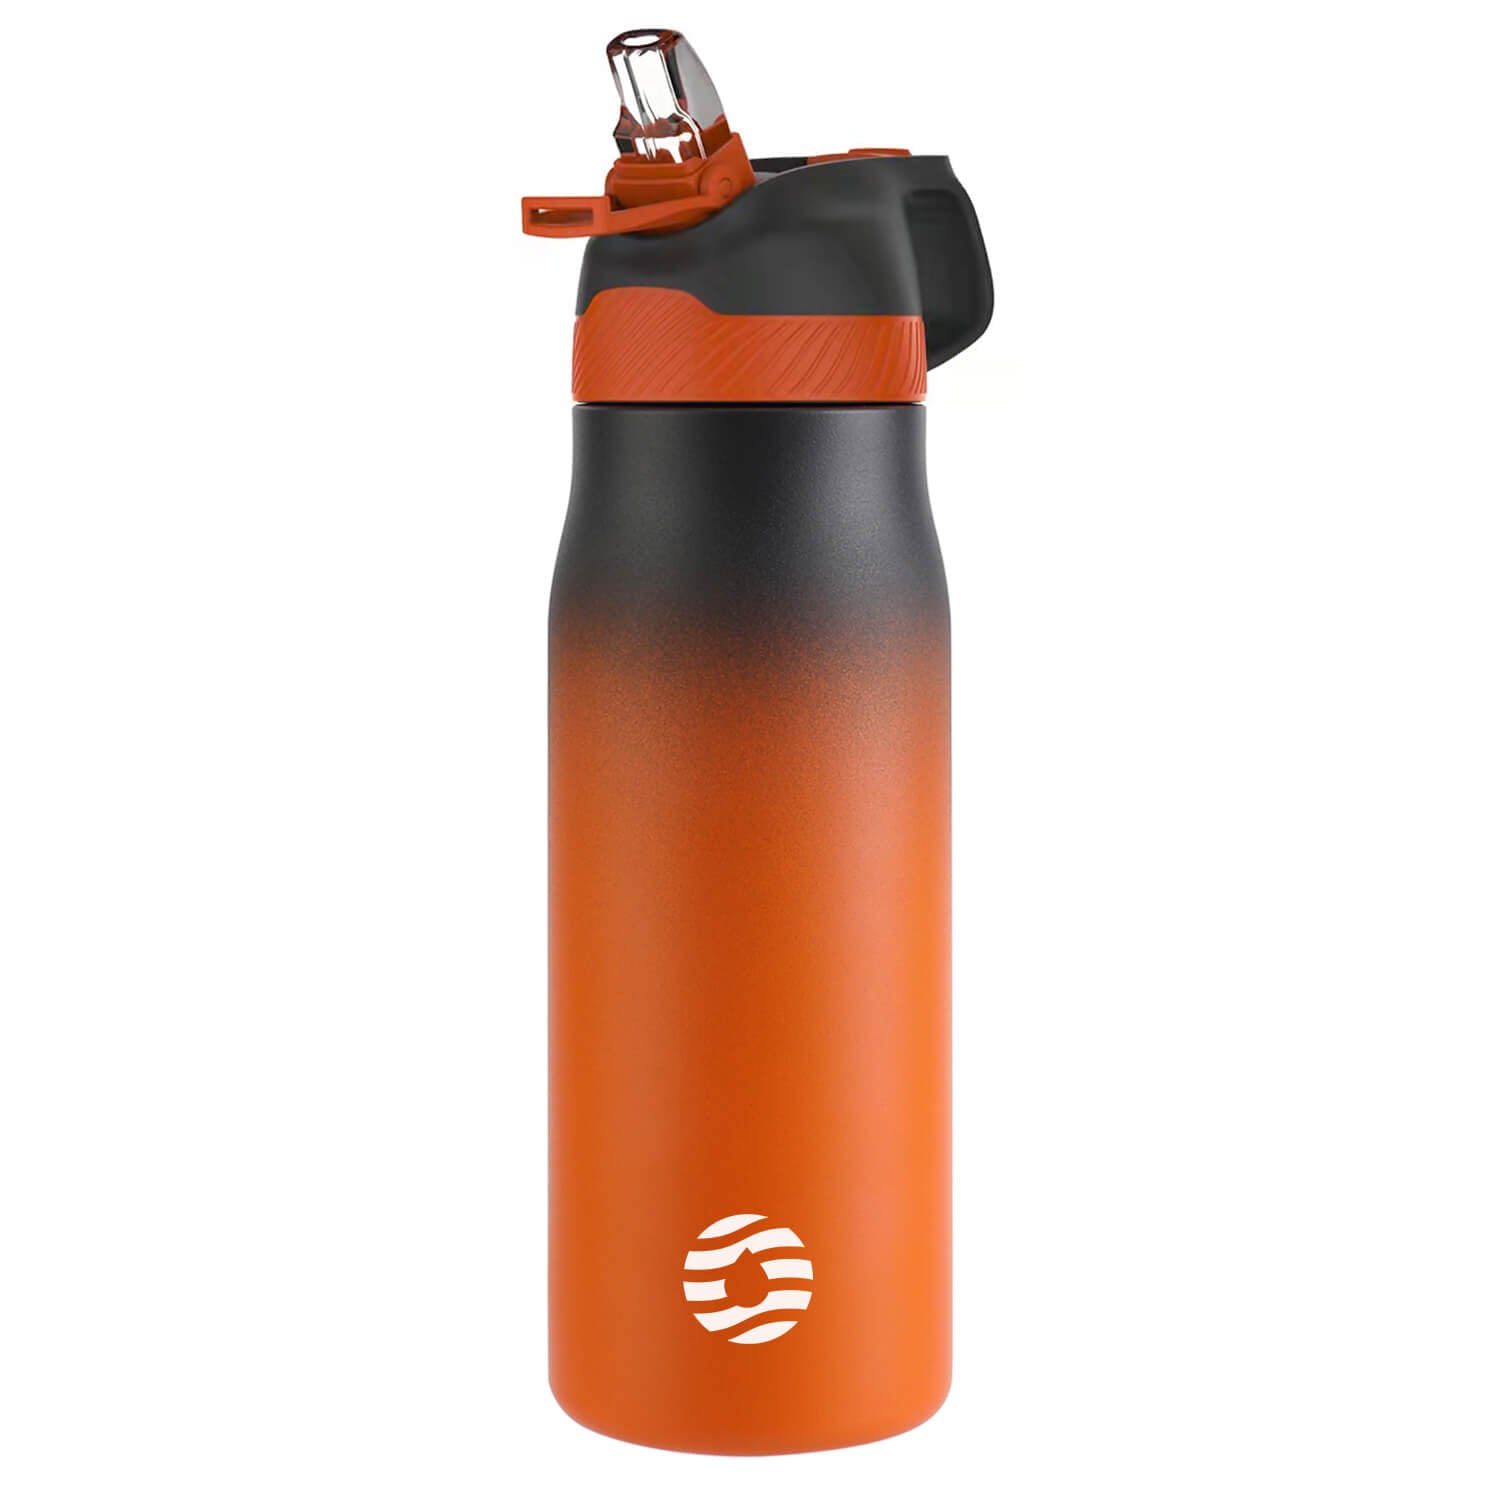 http://www.fjbottle.com/cdn/shop/products/24-oz-orange-water-bottle.jpg?v=1670493600